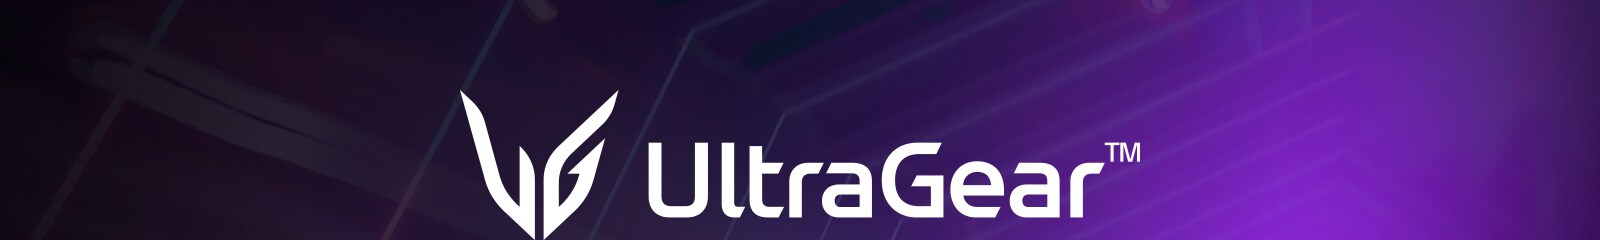 mnt-ultragear-24GQ40W-B-01-1-lg-ultragear-desktop